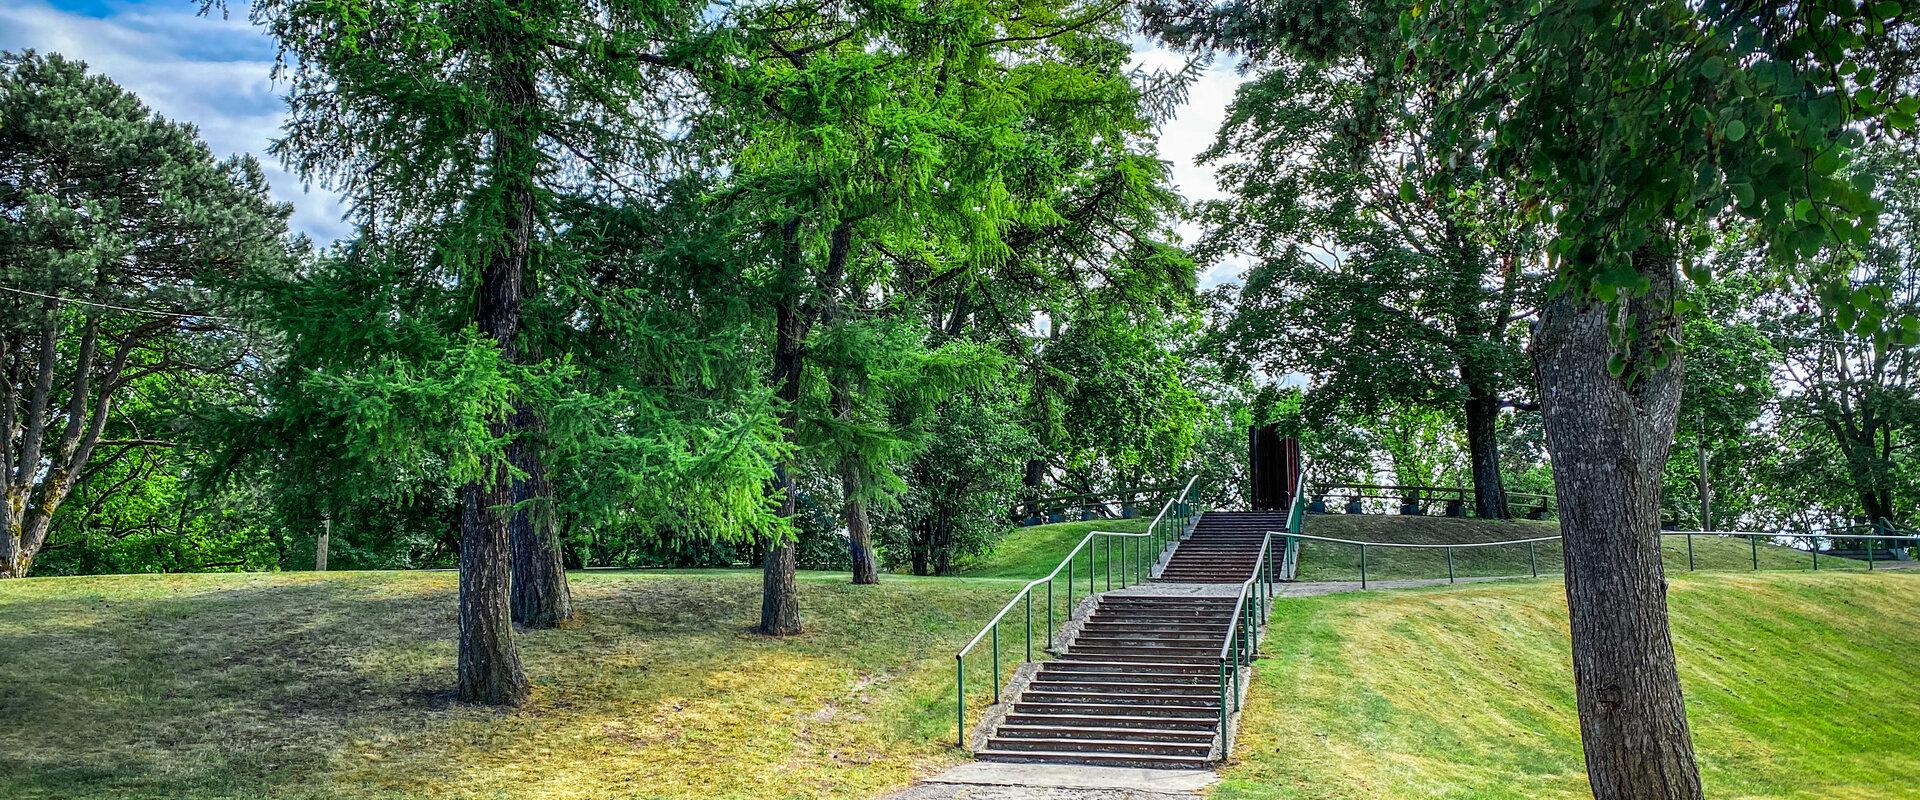 Der Munamäe Park, der zwar nicht groß ist, ist einer der sechs unter Schutz stehenden Parks in Pärnu. Dieser alte Park ist die höchste Stelle der Stad